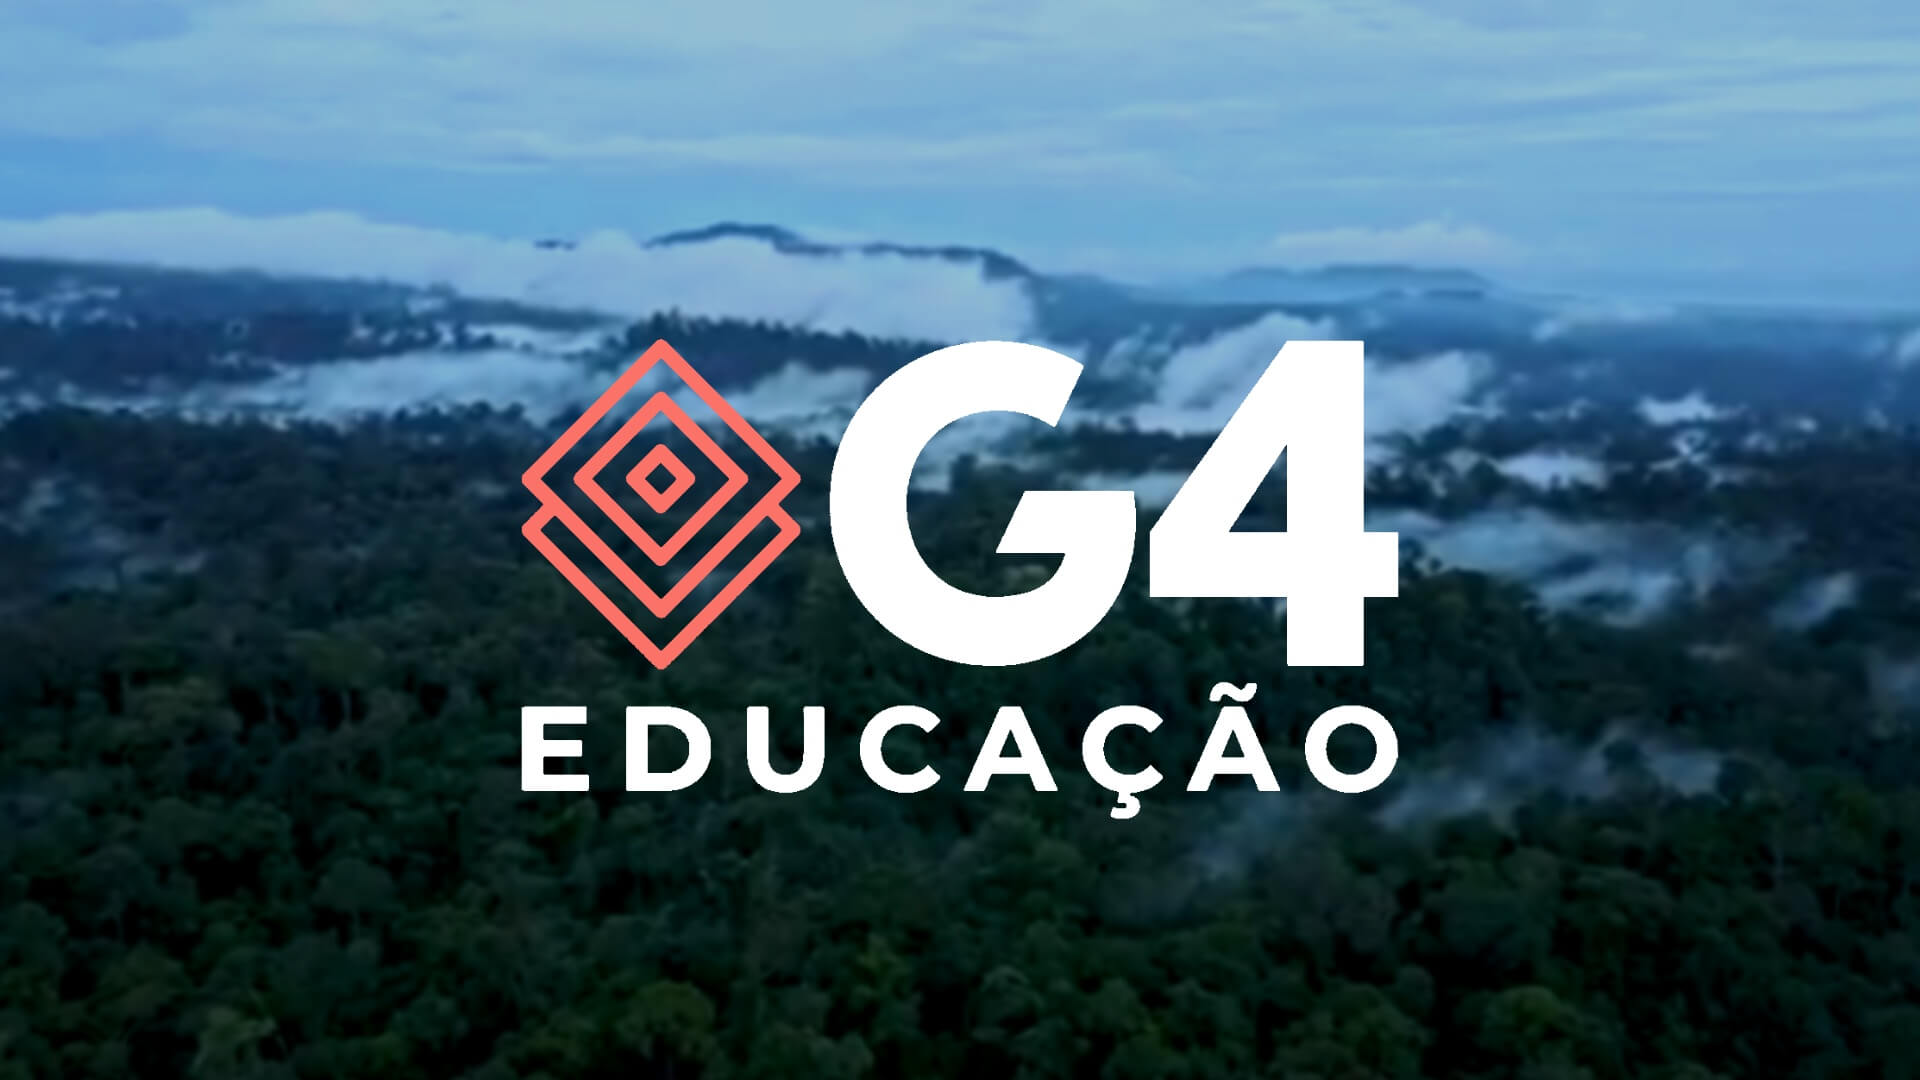 G4 Educação lança campanha de conscientização sobre extinção do empreendedor